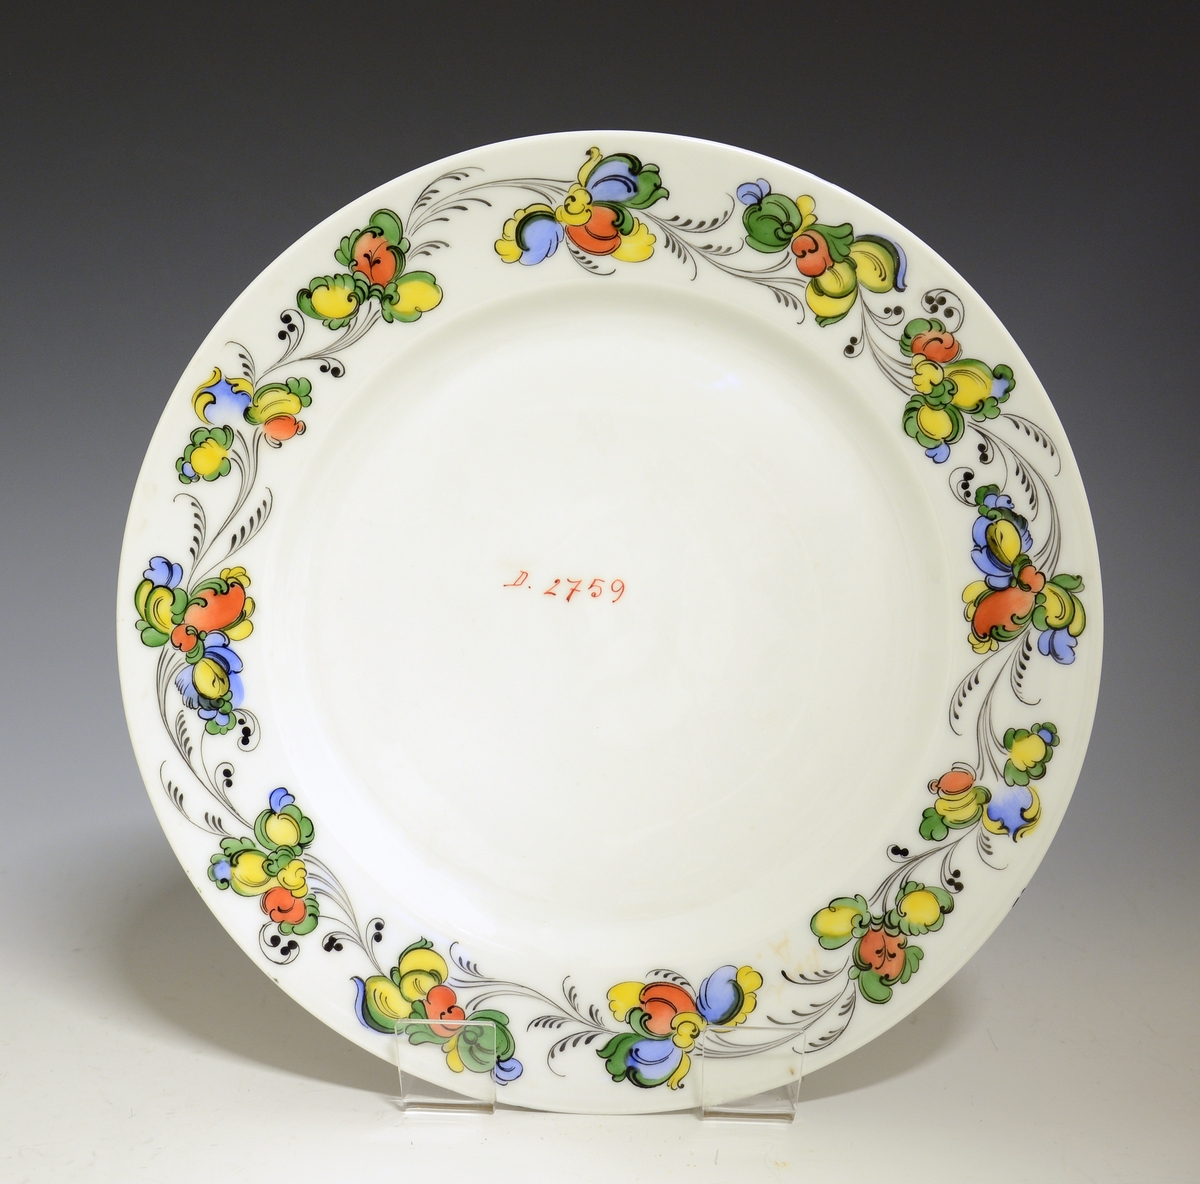 Prot: Flat tallerken av porselen, med glatt kant. Hvit glasur. Rosemalt fane i grønt, gult, blått, rødt og sort. Midt på speilen påskrift: "D. 2769"
Dekor: 2769